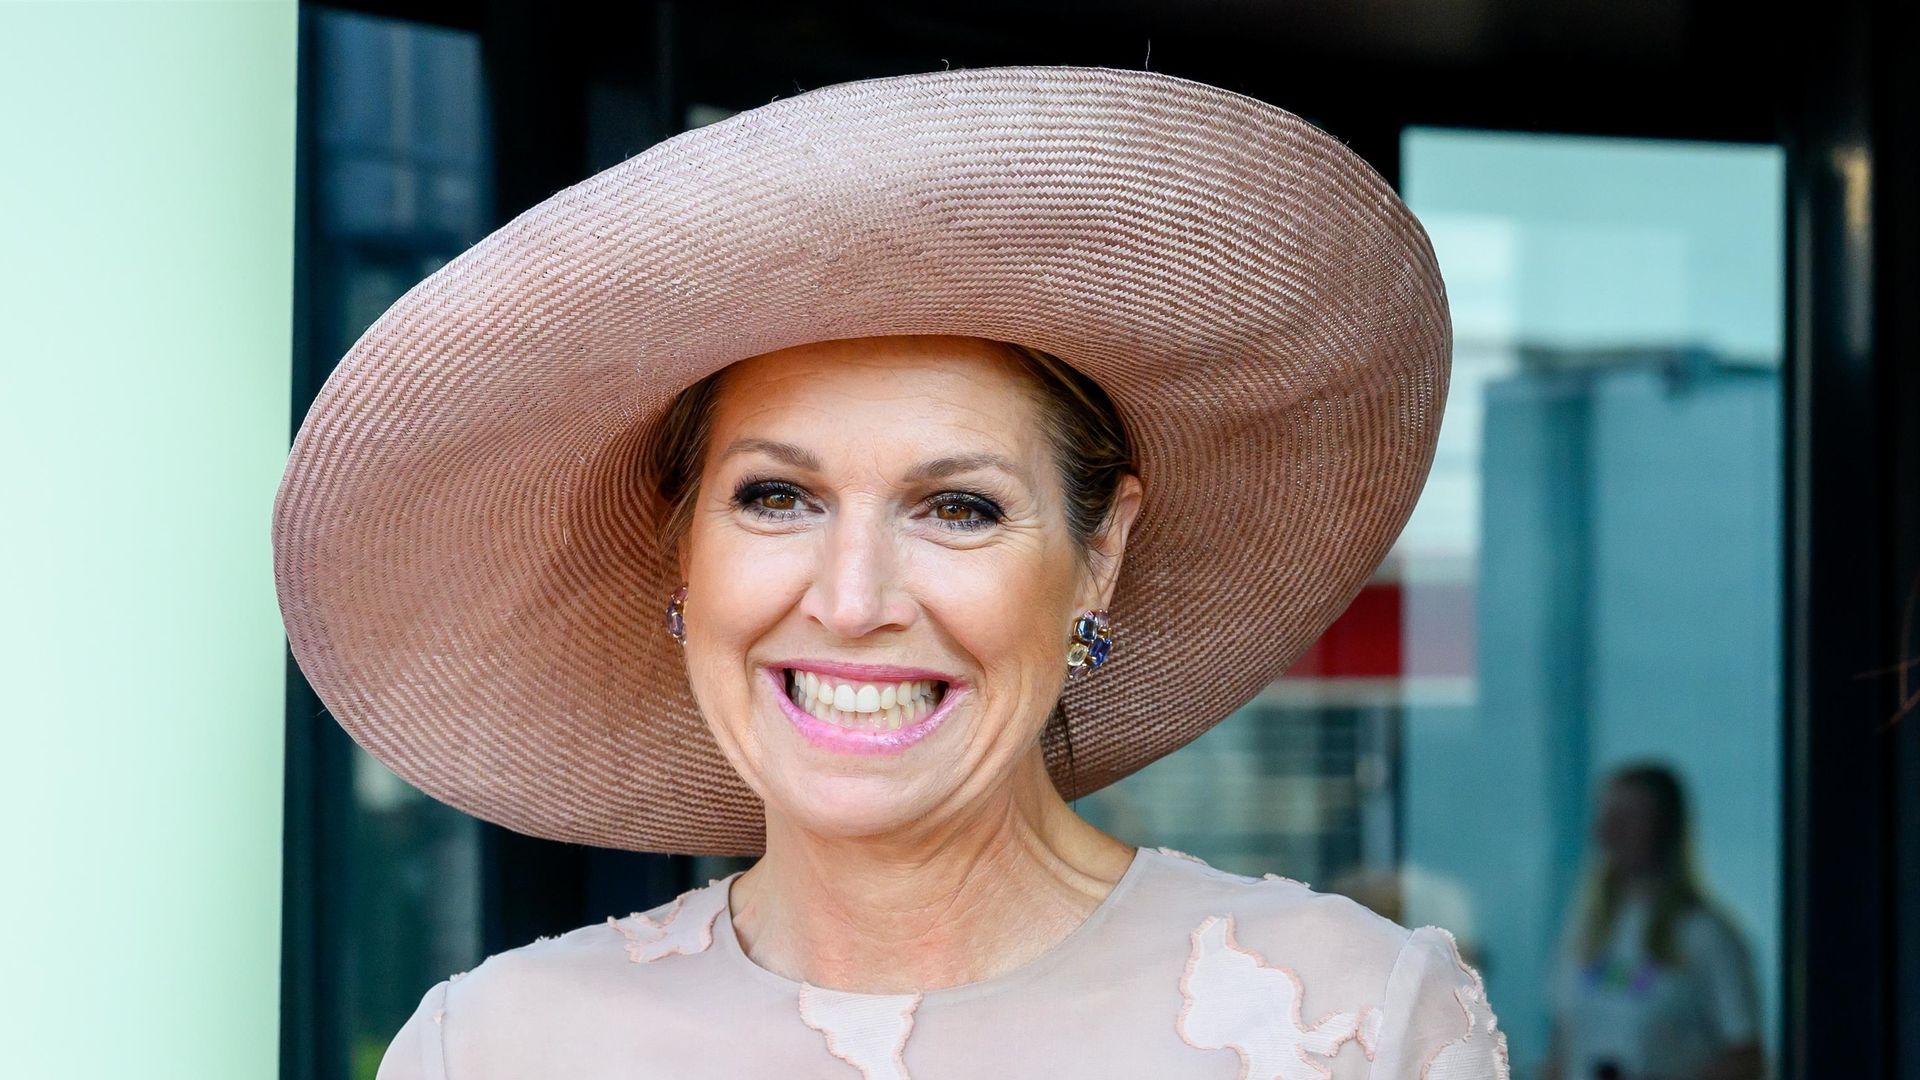 Máxima de Países Bajos rescata uno de sus sombreros preferidos en su último acto benéfico